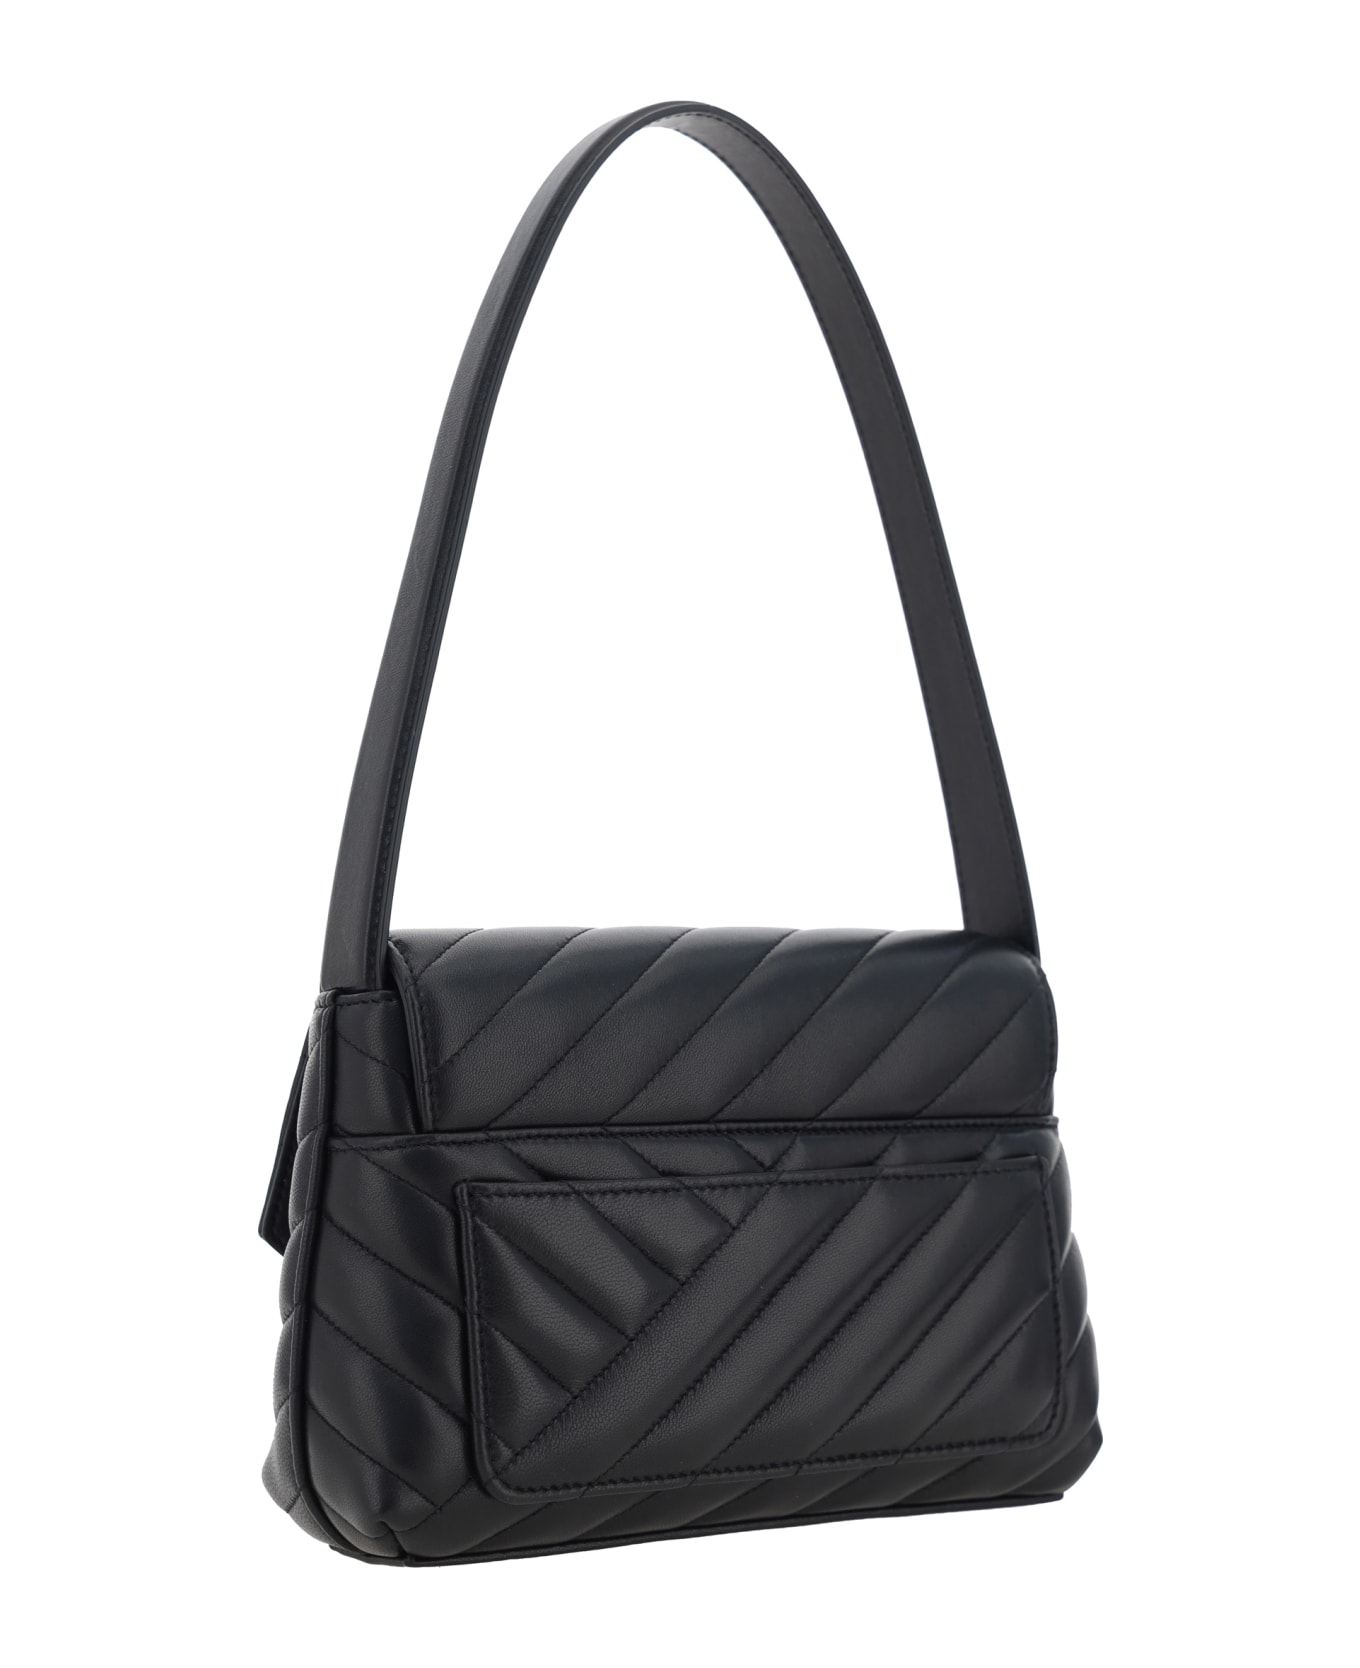 Dolce & Gabbana Lop Shoulder Bag - Nero トートバッグ